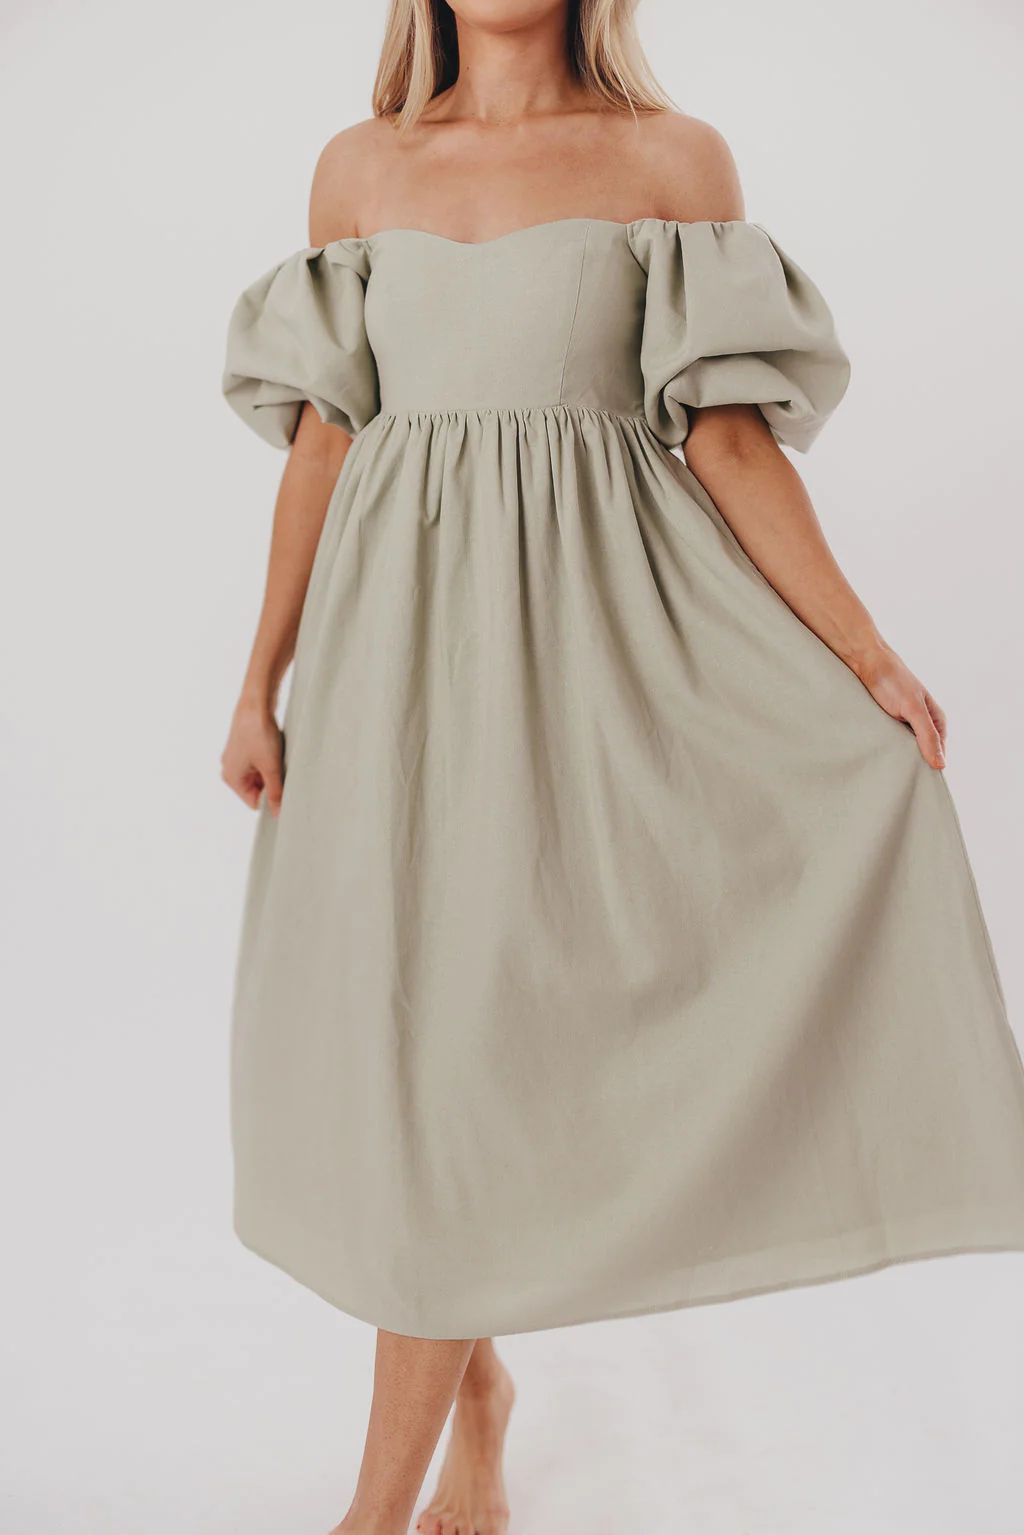 Hamilton Midi Dress in Olive - Bump Friendly (S-XL) | Worth Collective